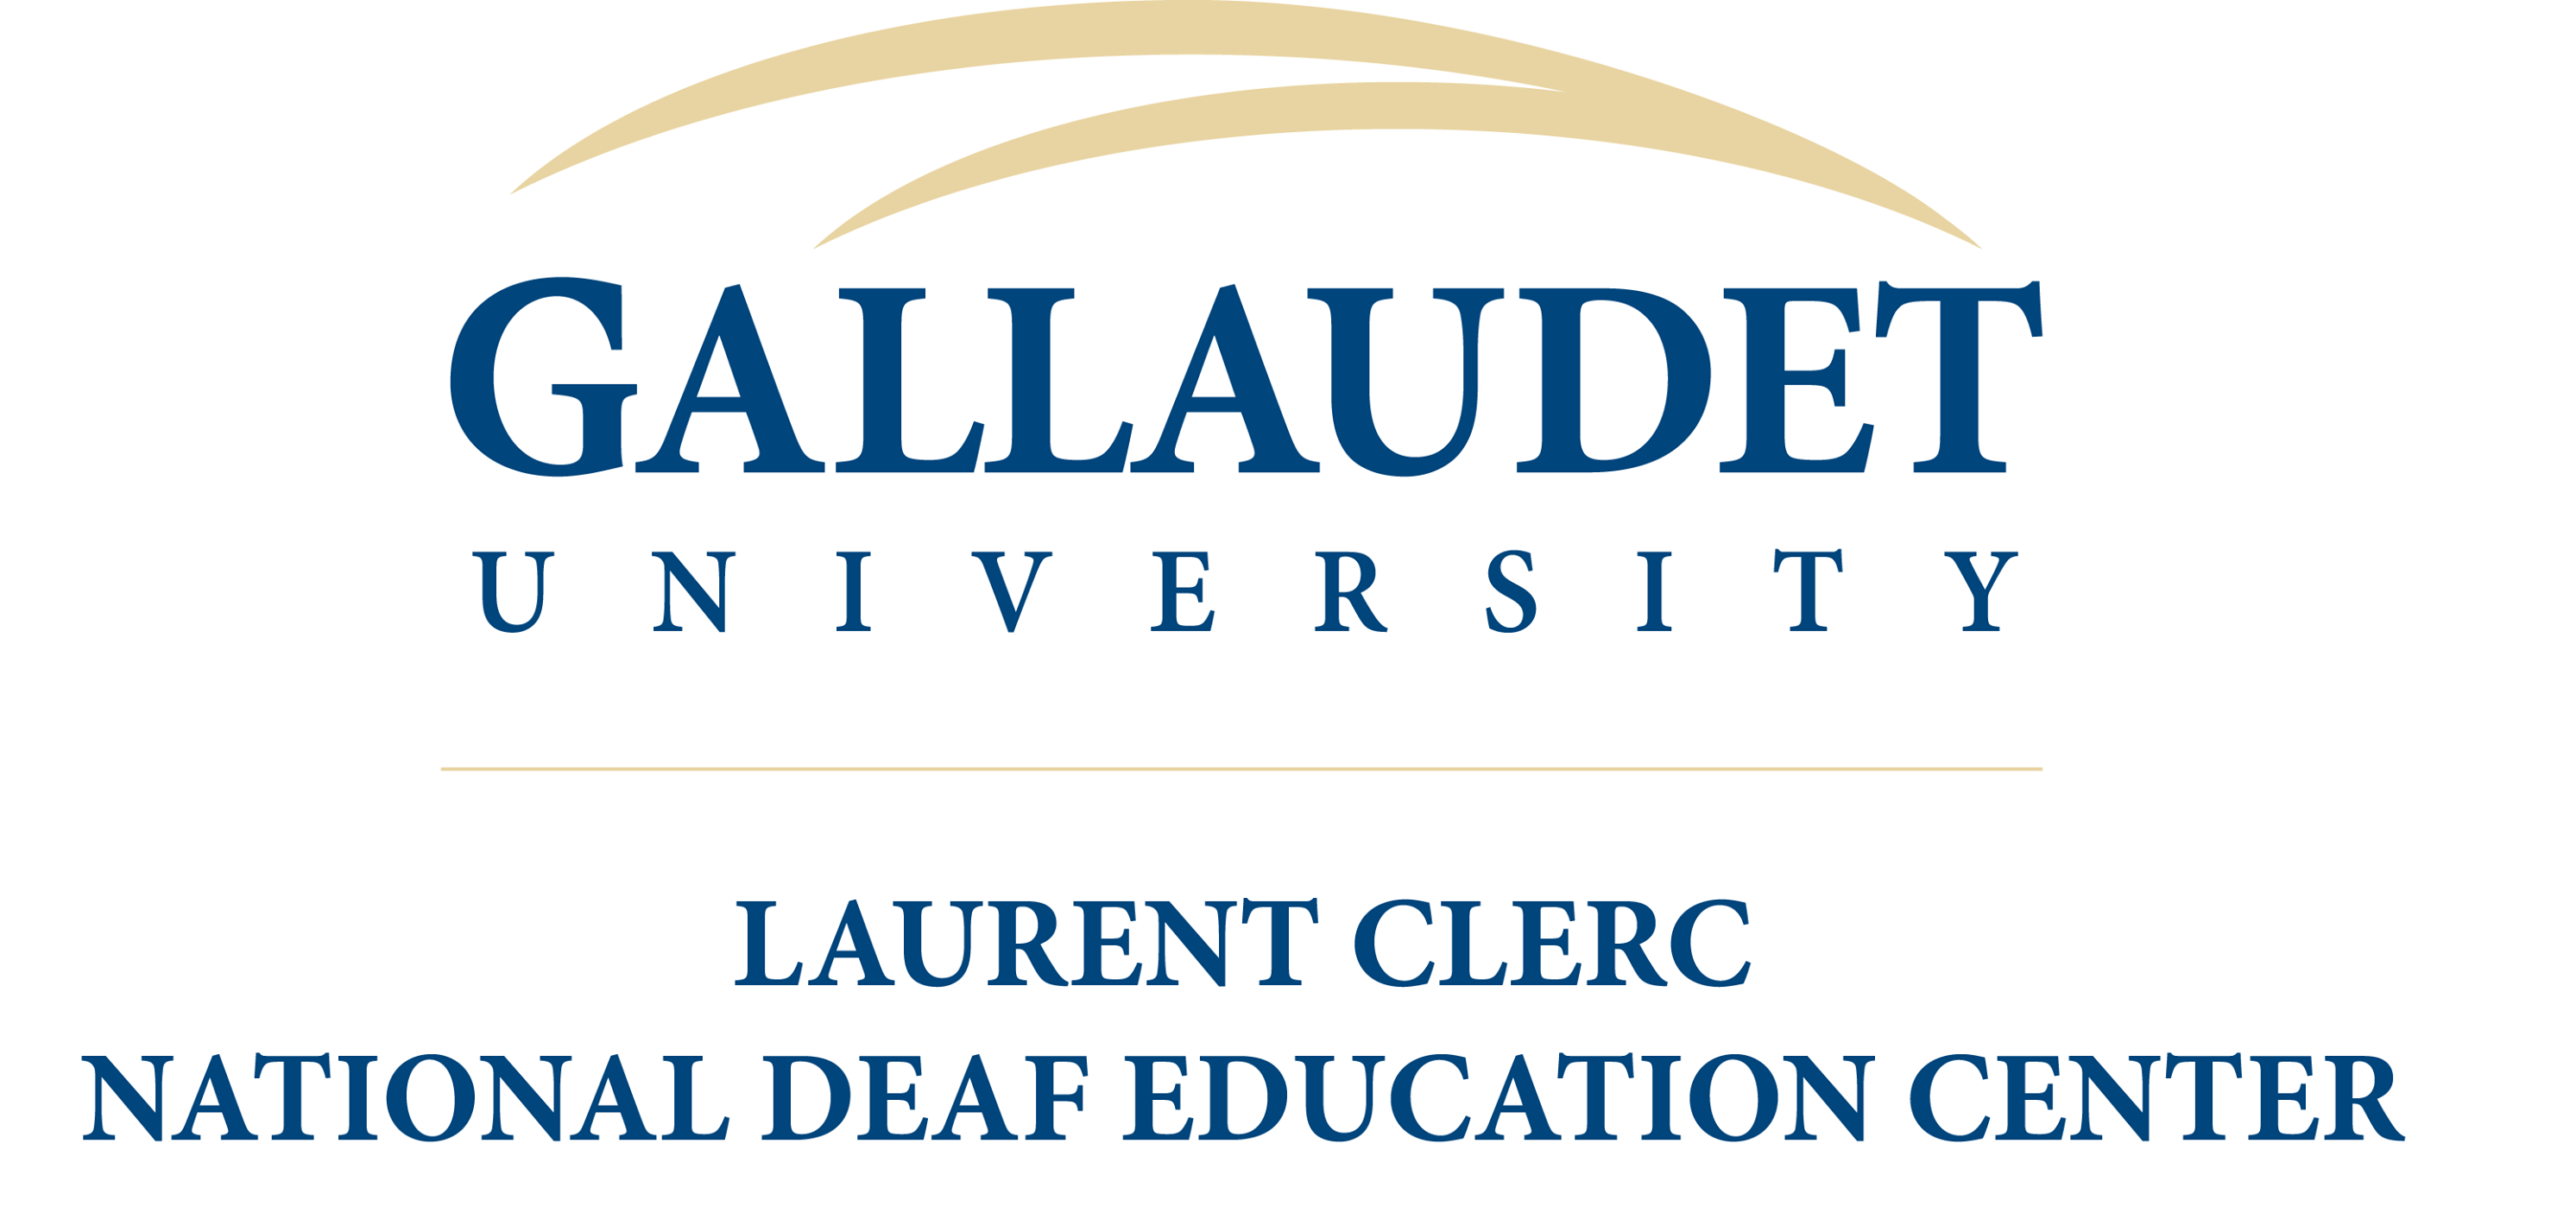 Logotipo del Centro Clerc de la Universidad de Gallaudet